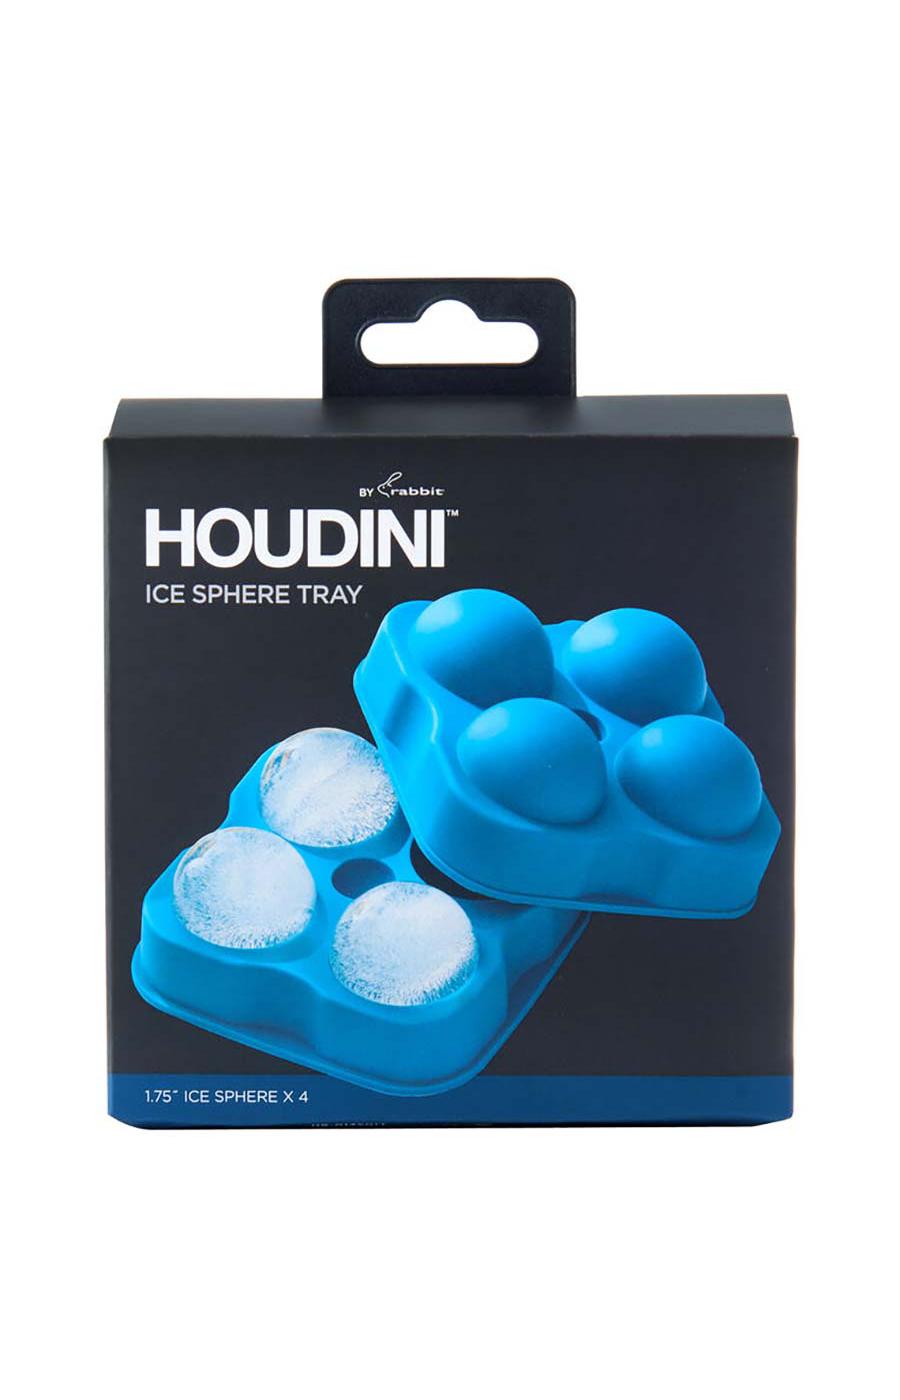 Houdini Ice Sphere Tray